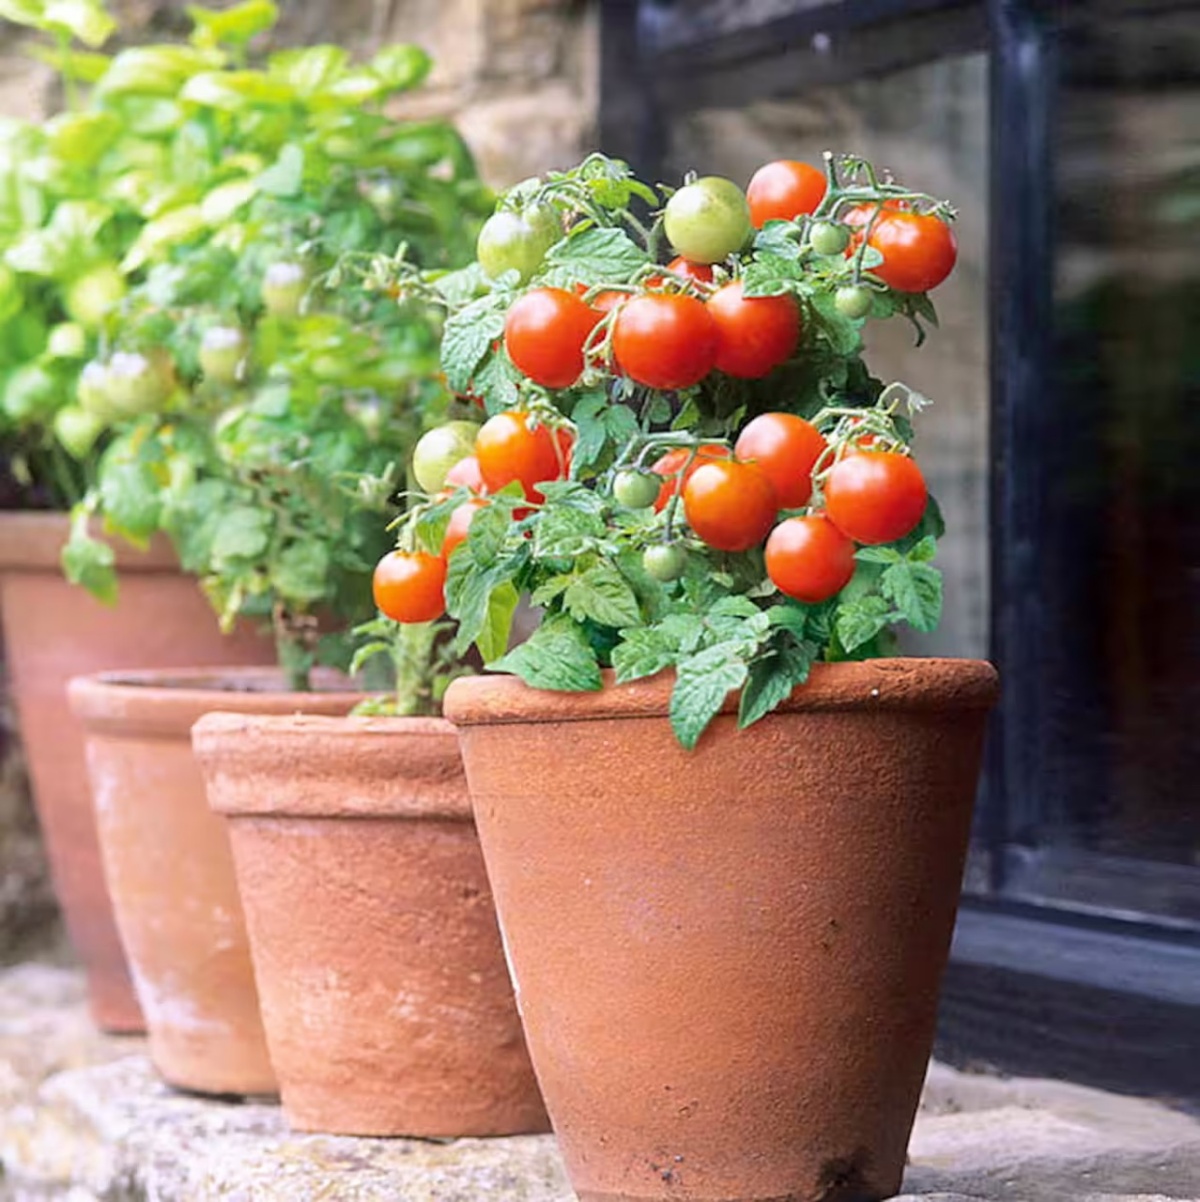 pianta di pomodoro in vaso in giardino